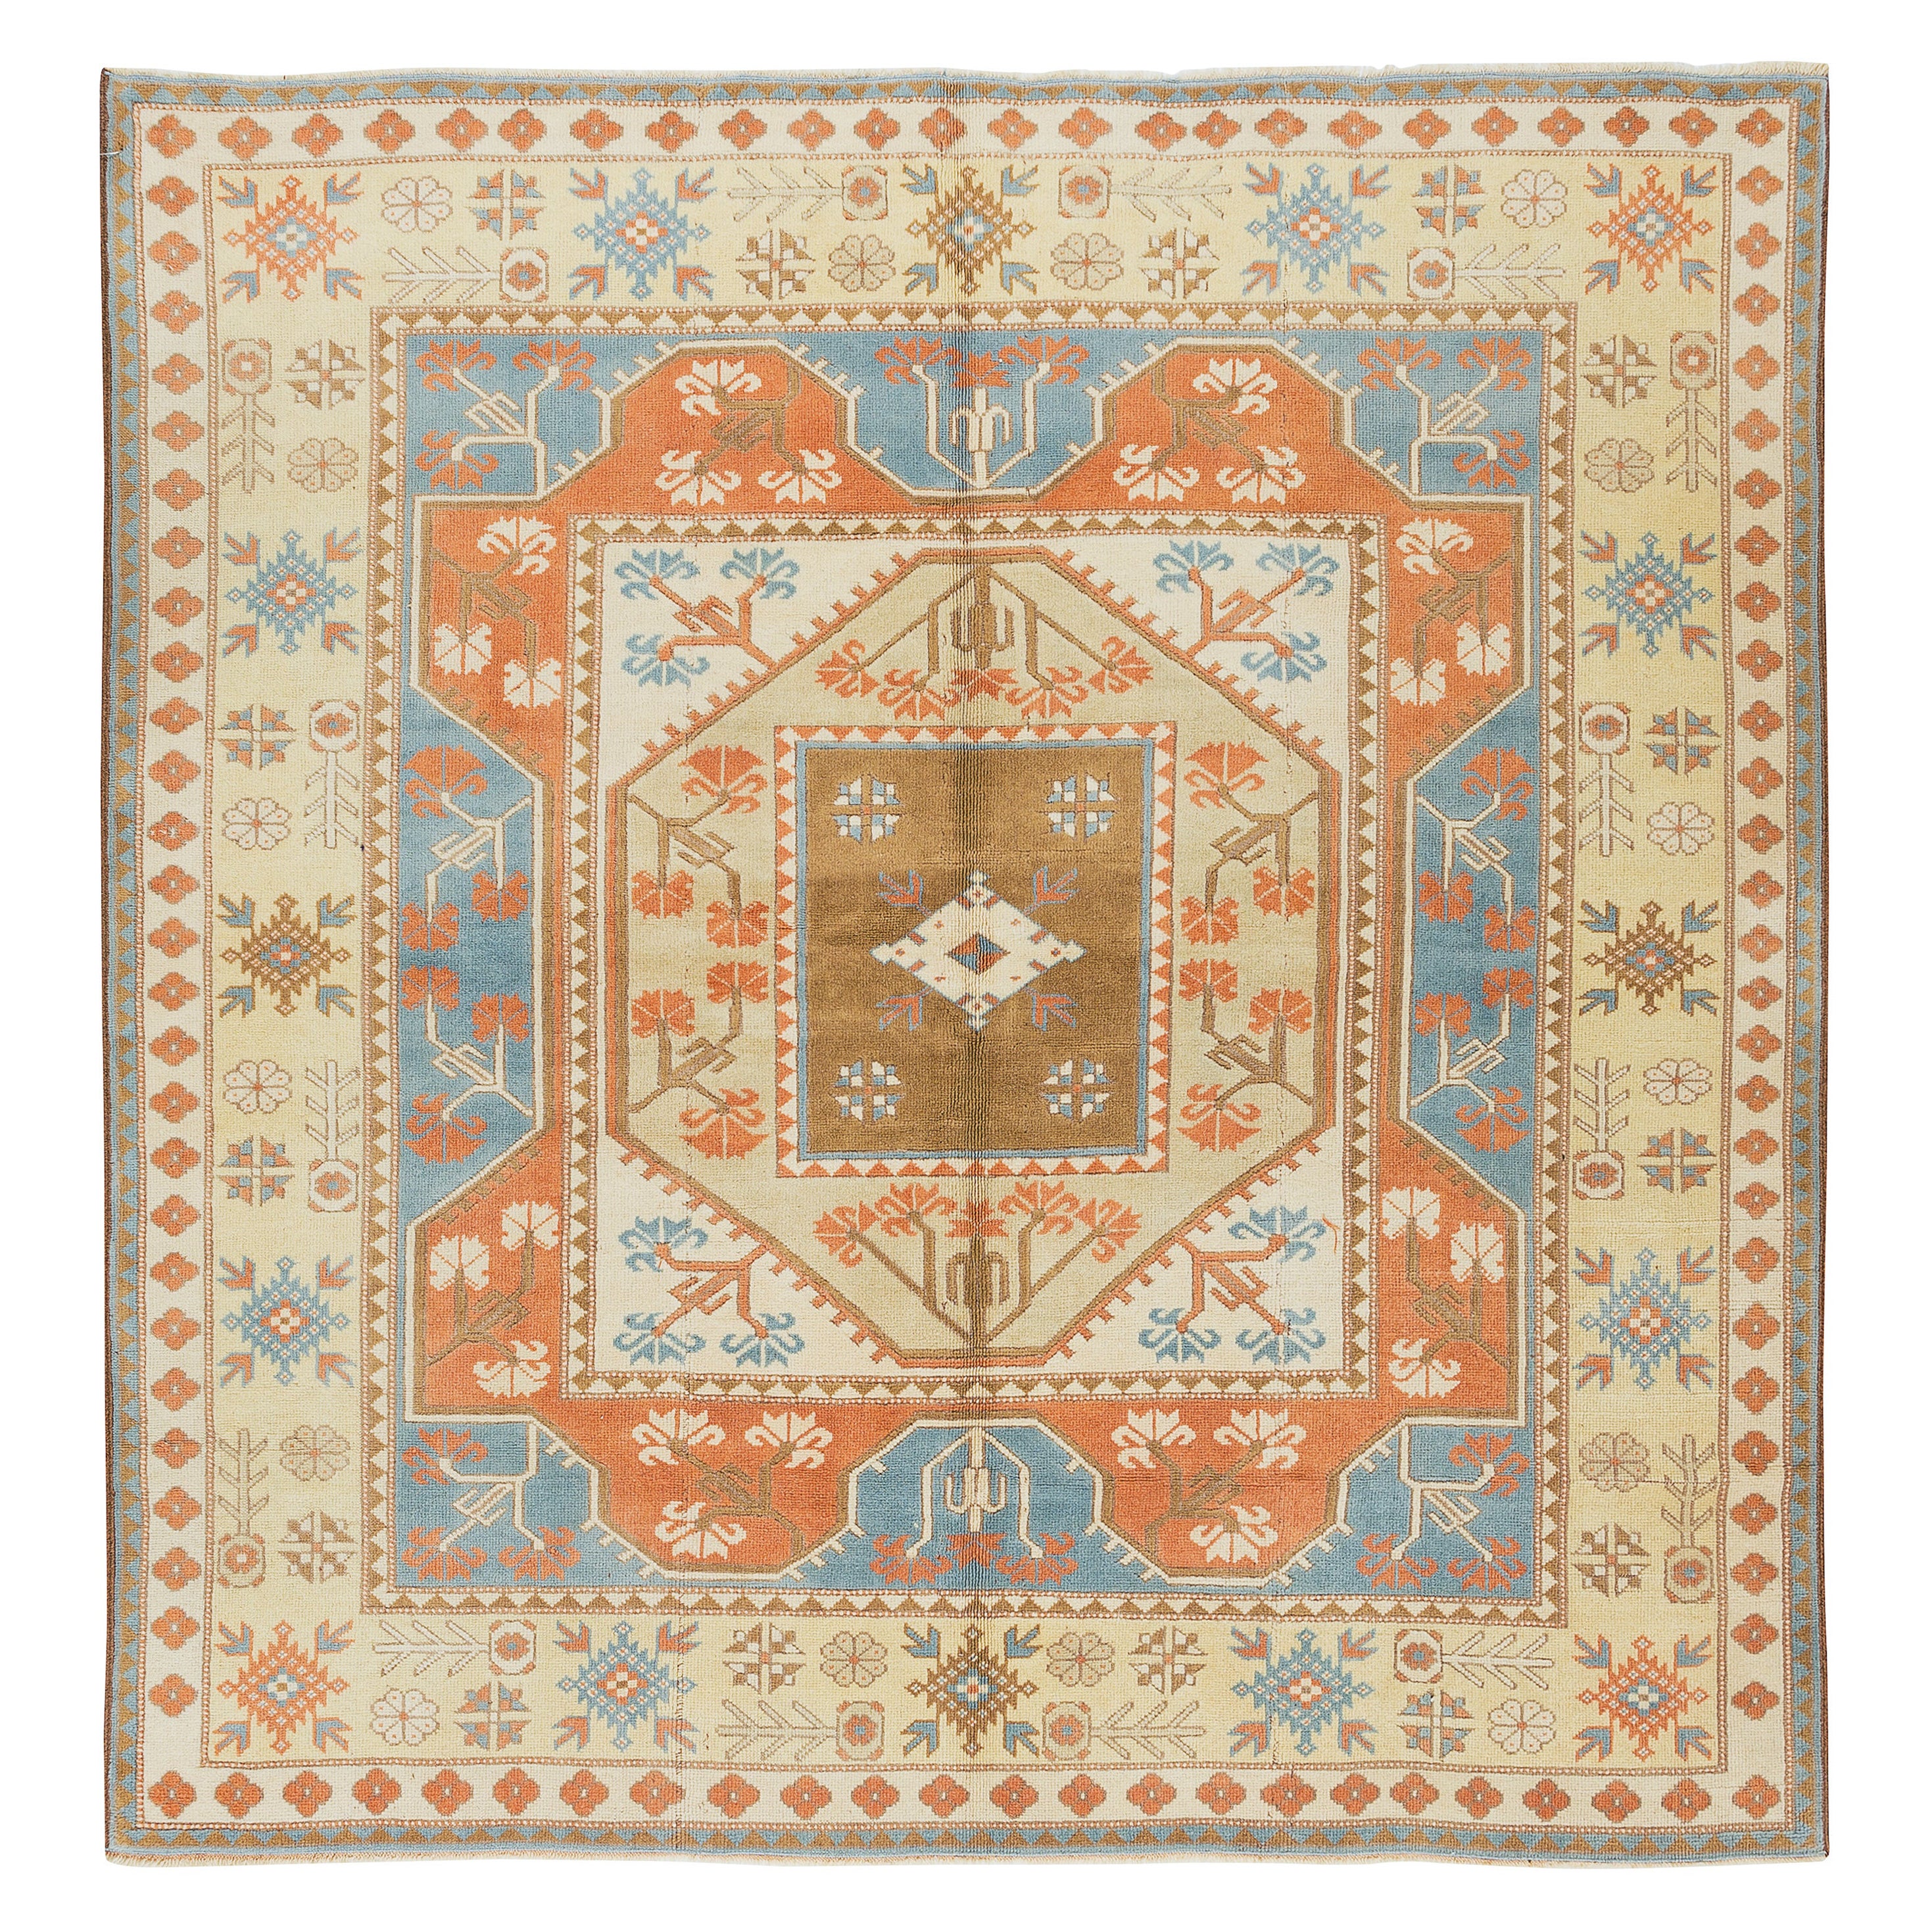 Tapis turc artisanal rare, tapis géométrique unique et vintage de taille 6,5 x 6,6 m